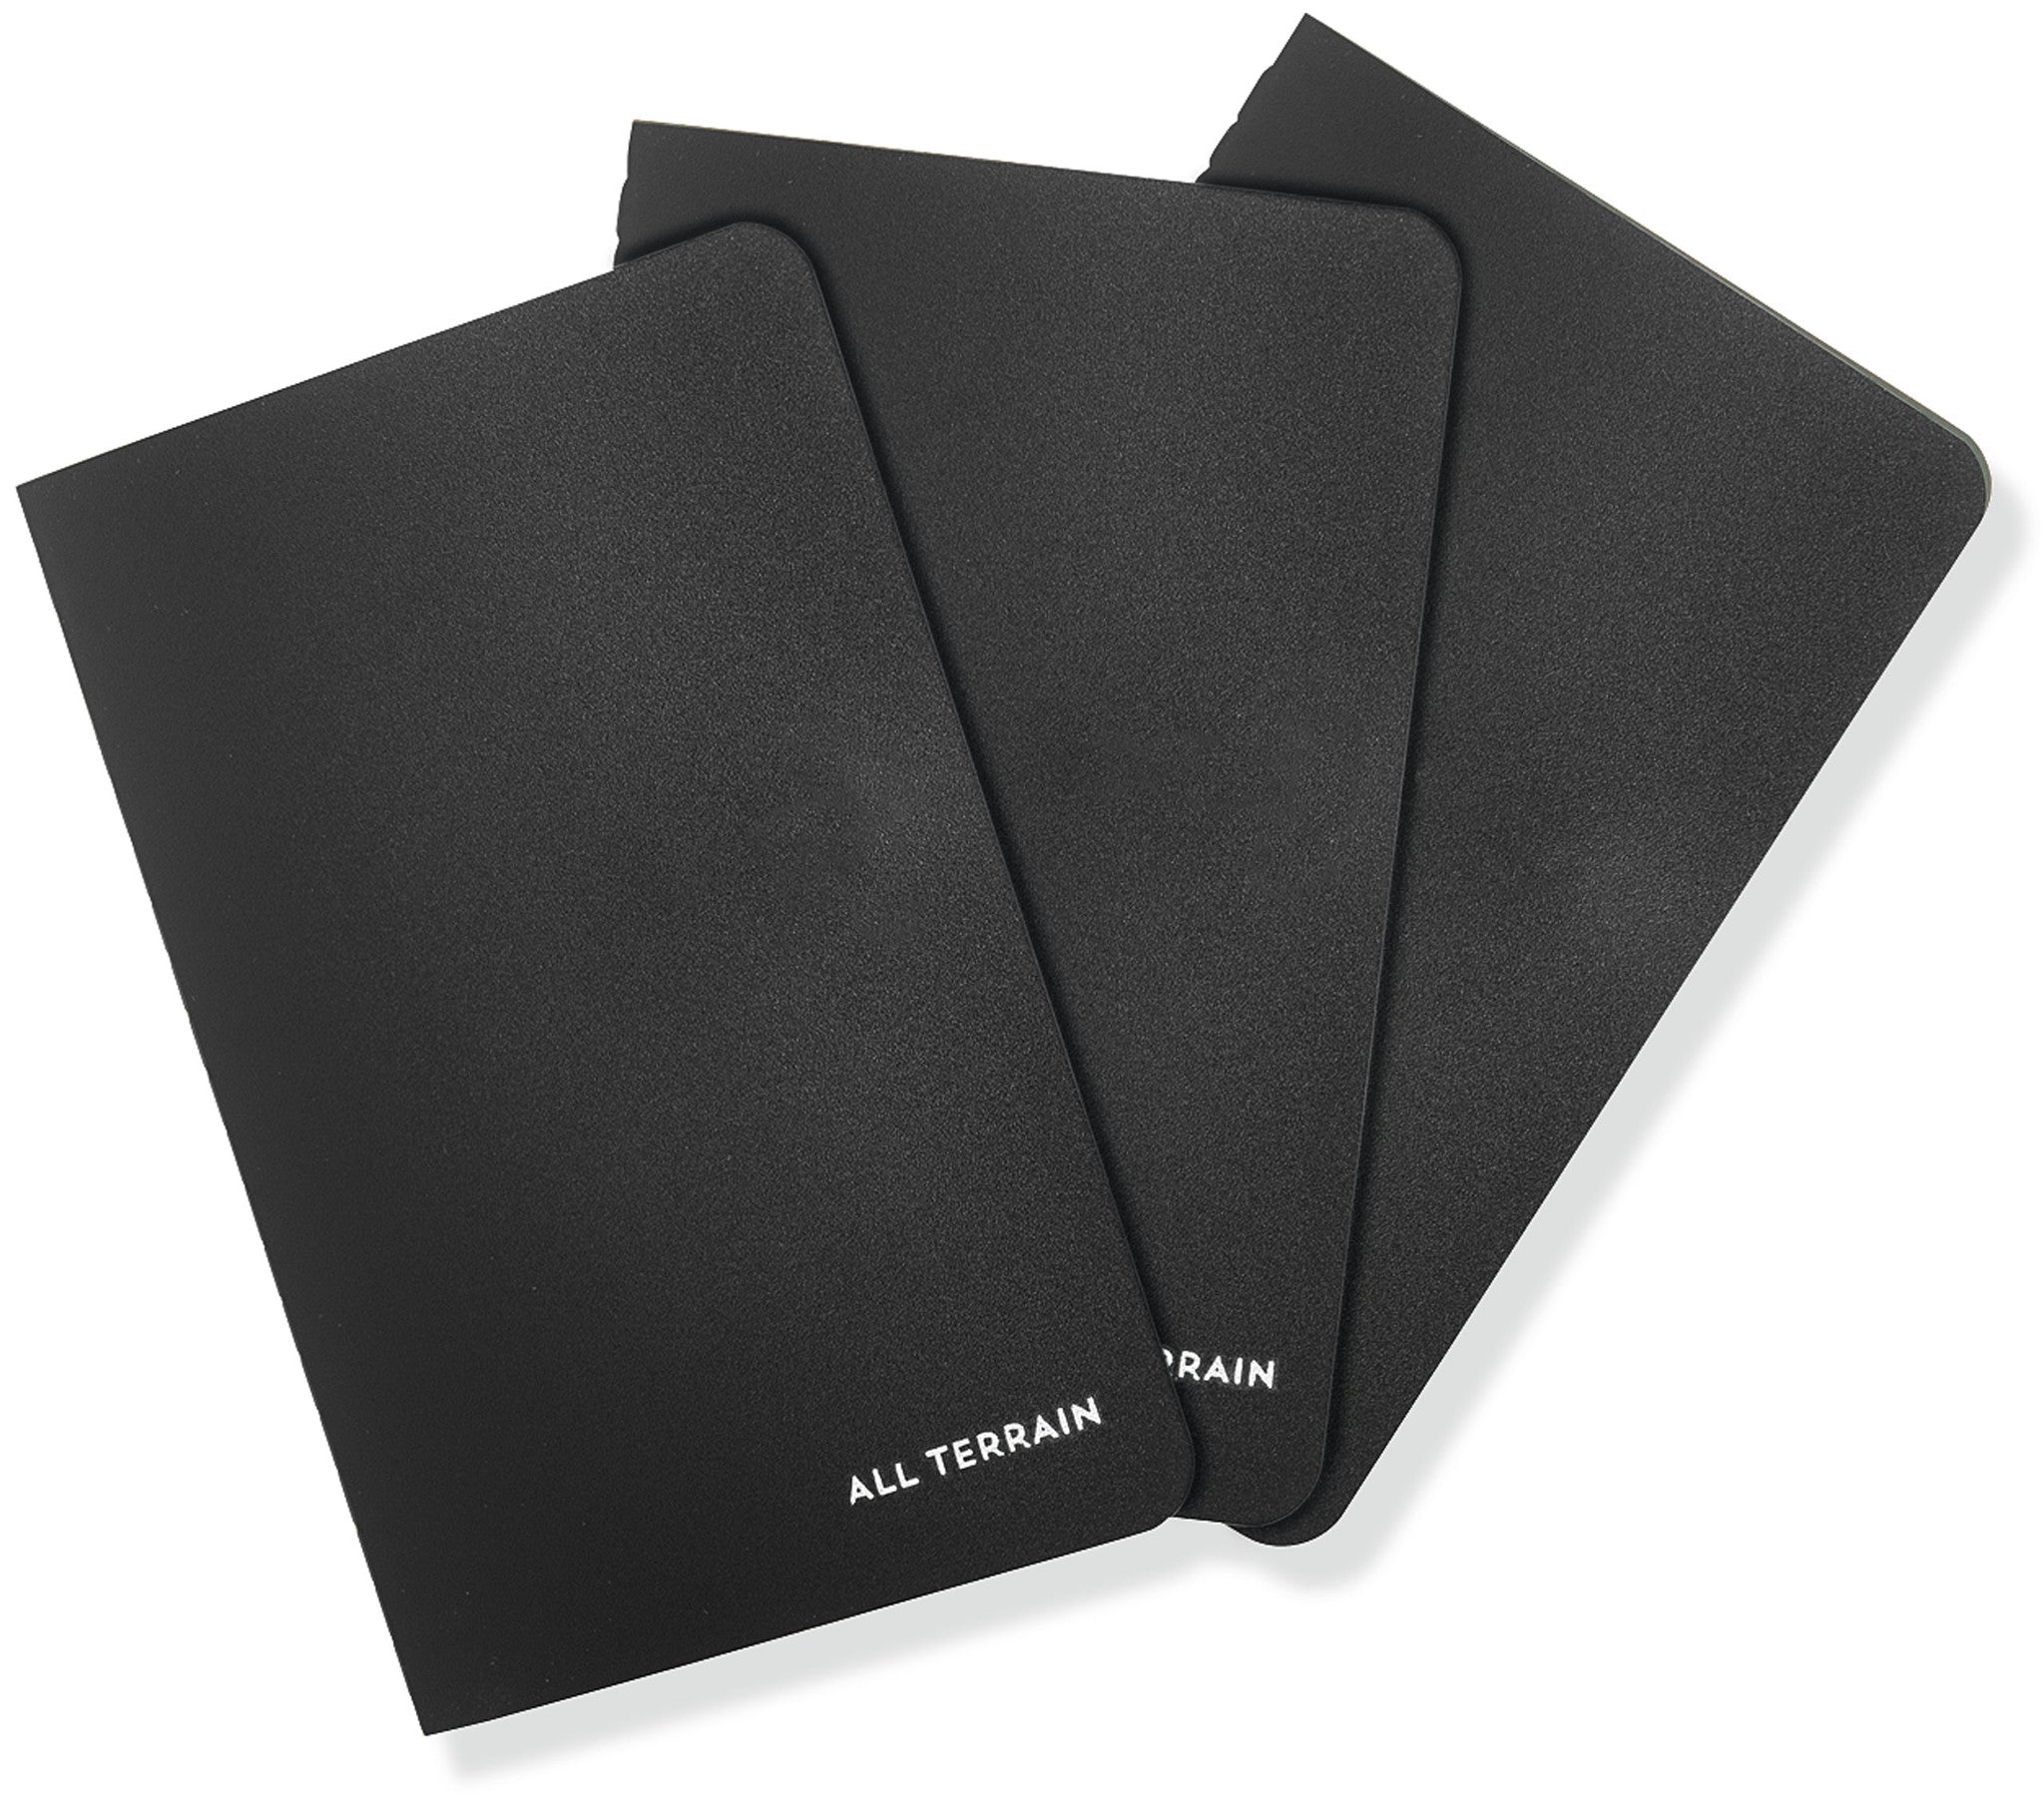 Peter Pauper Notebook 3 Pack - All Terrain Waterproof - Black